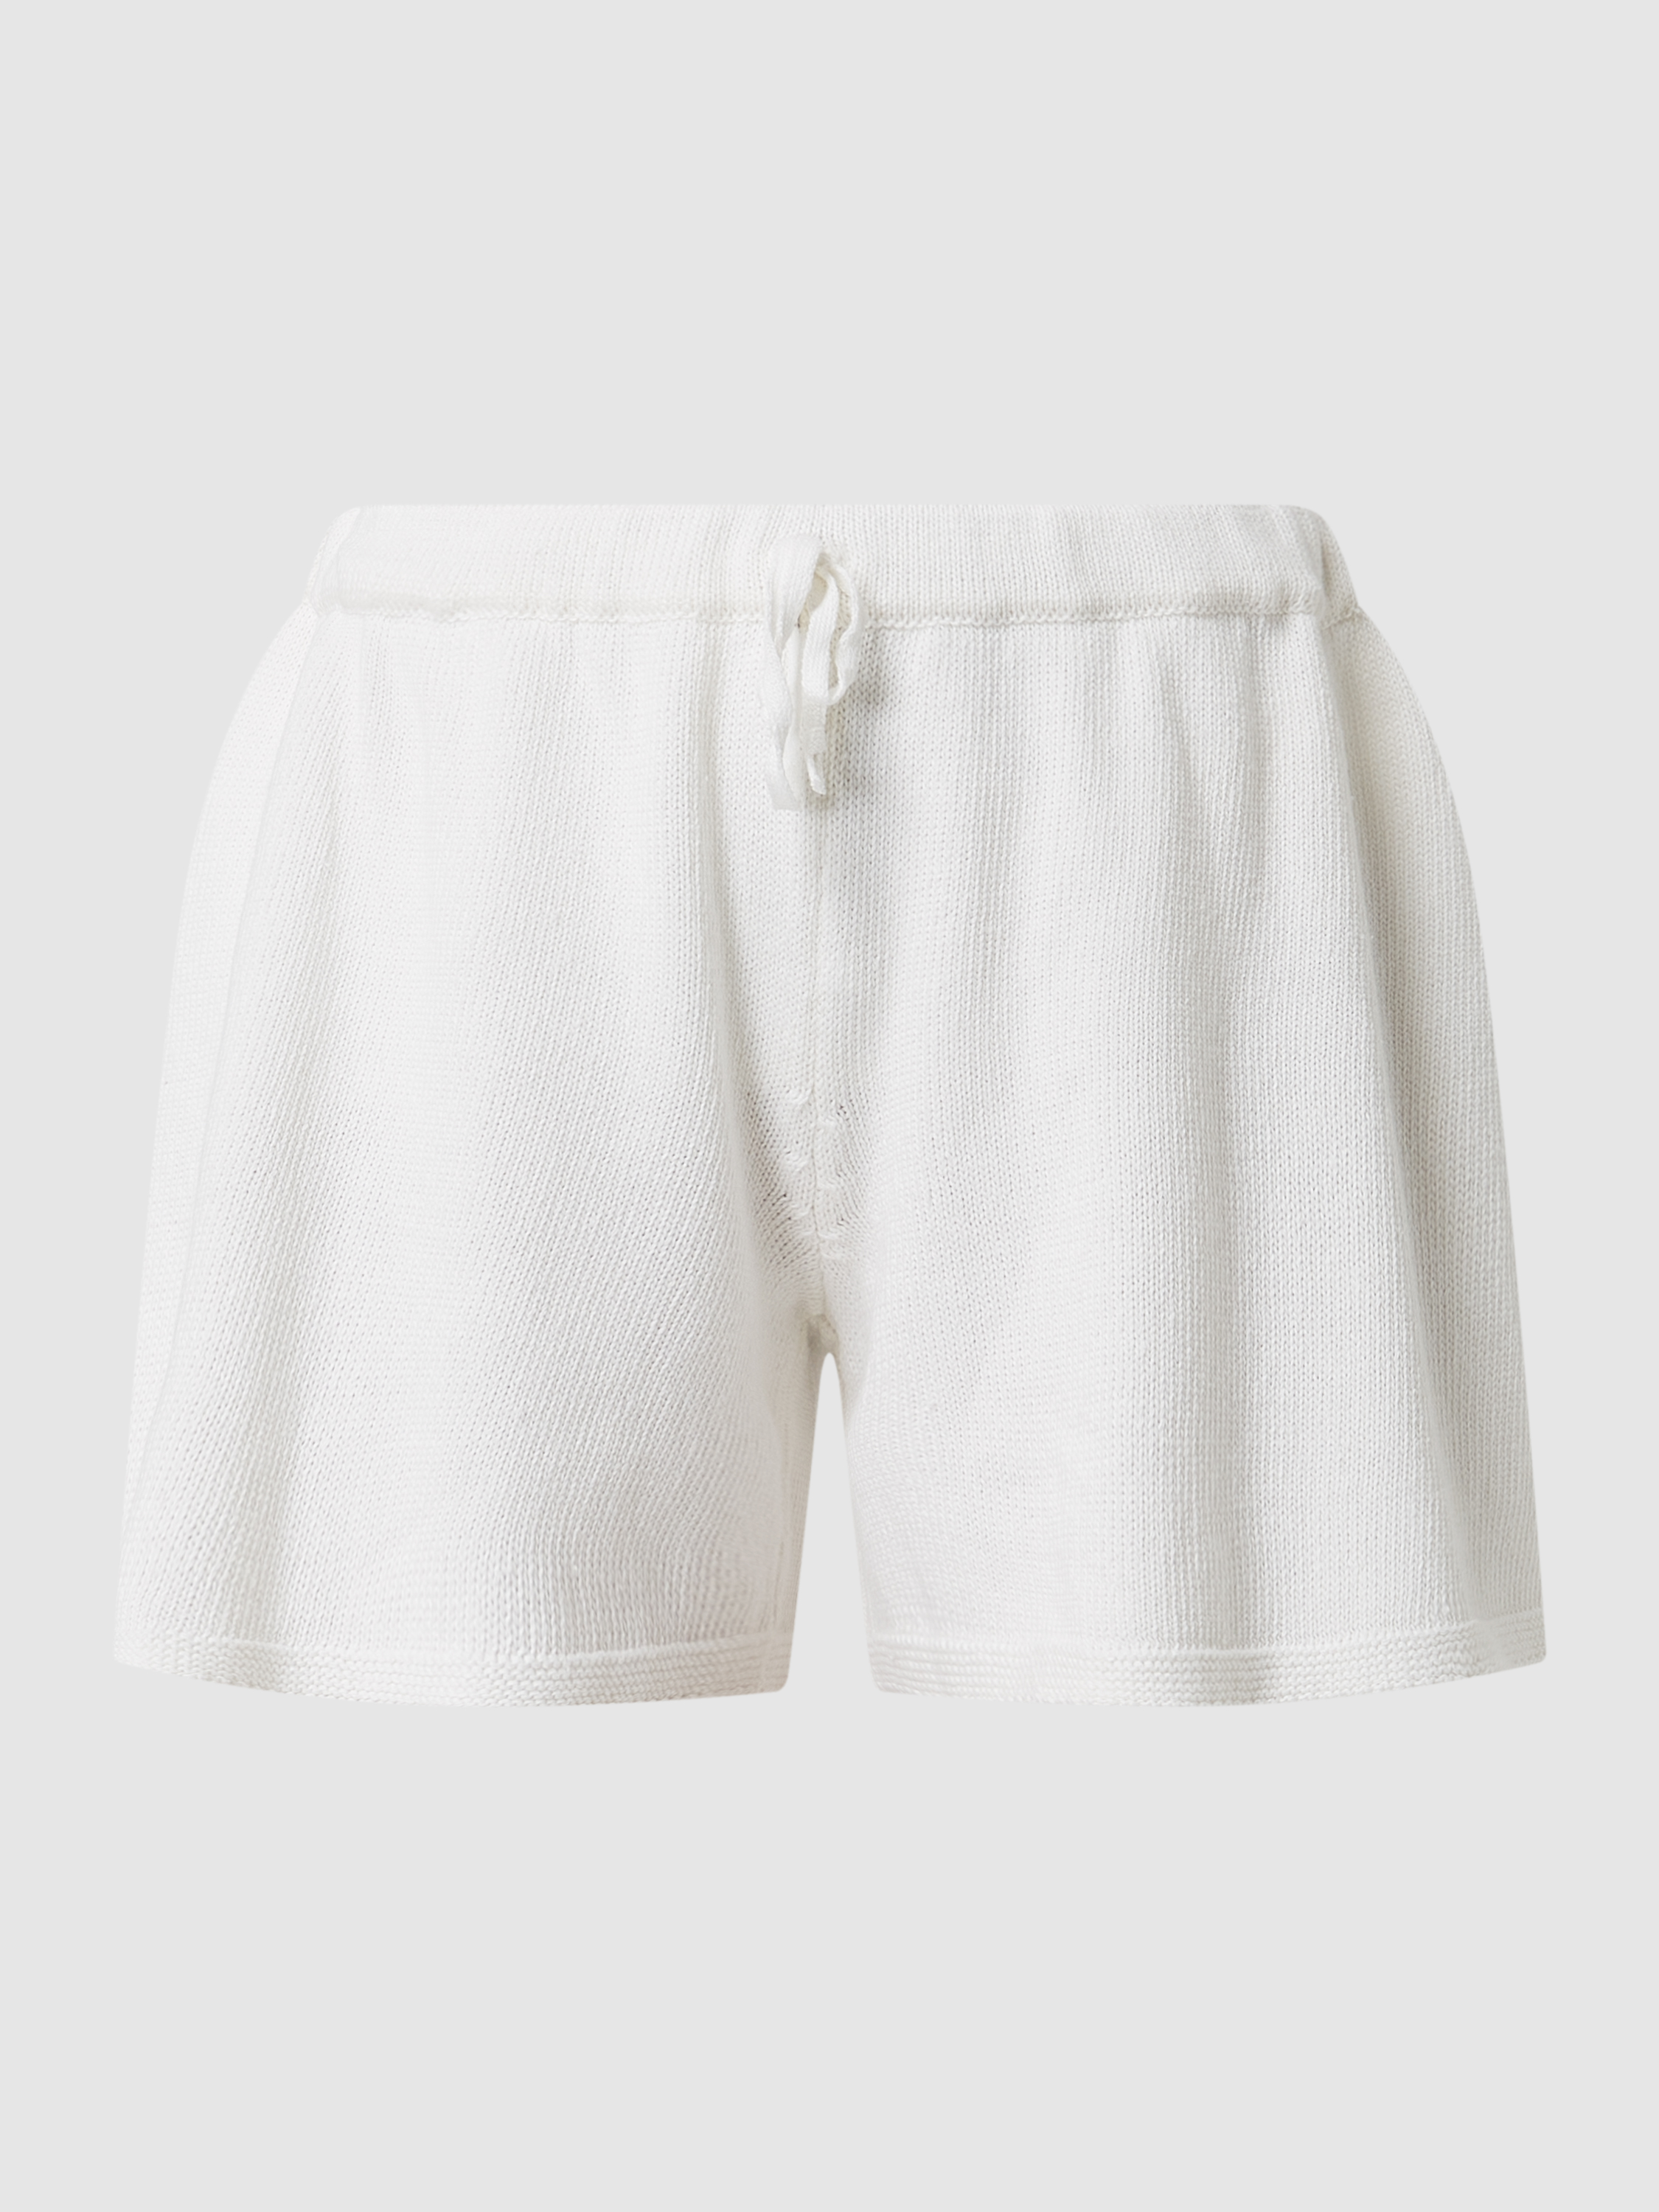 

Повседневные шорты женские Chiara Fiorini 1553902 белые L (доставка из-за рубежа), Белый, 1553902